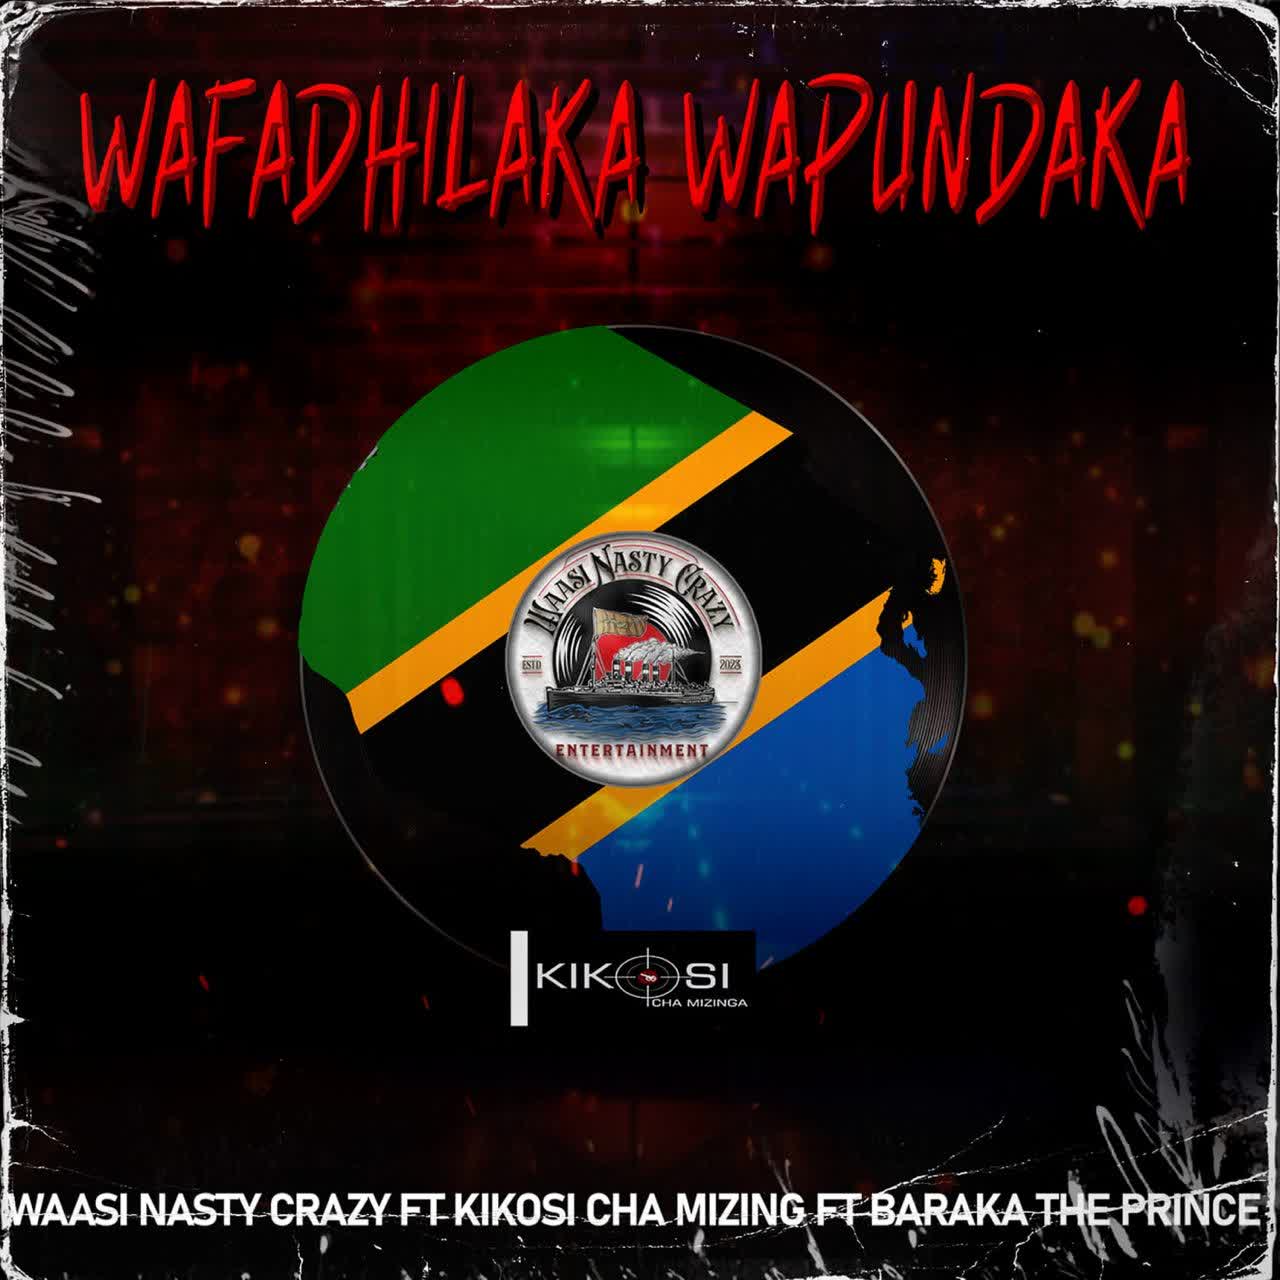  Waasi Nasty Crazy Z x Kikosi Cha Mizinga X Baraka The Prince – Wafadhiraka Wapundaka